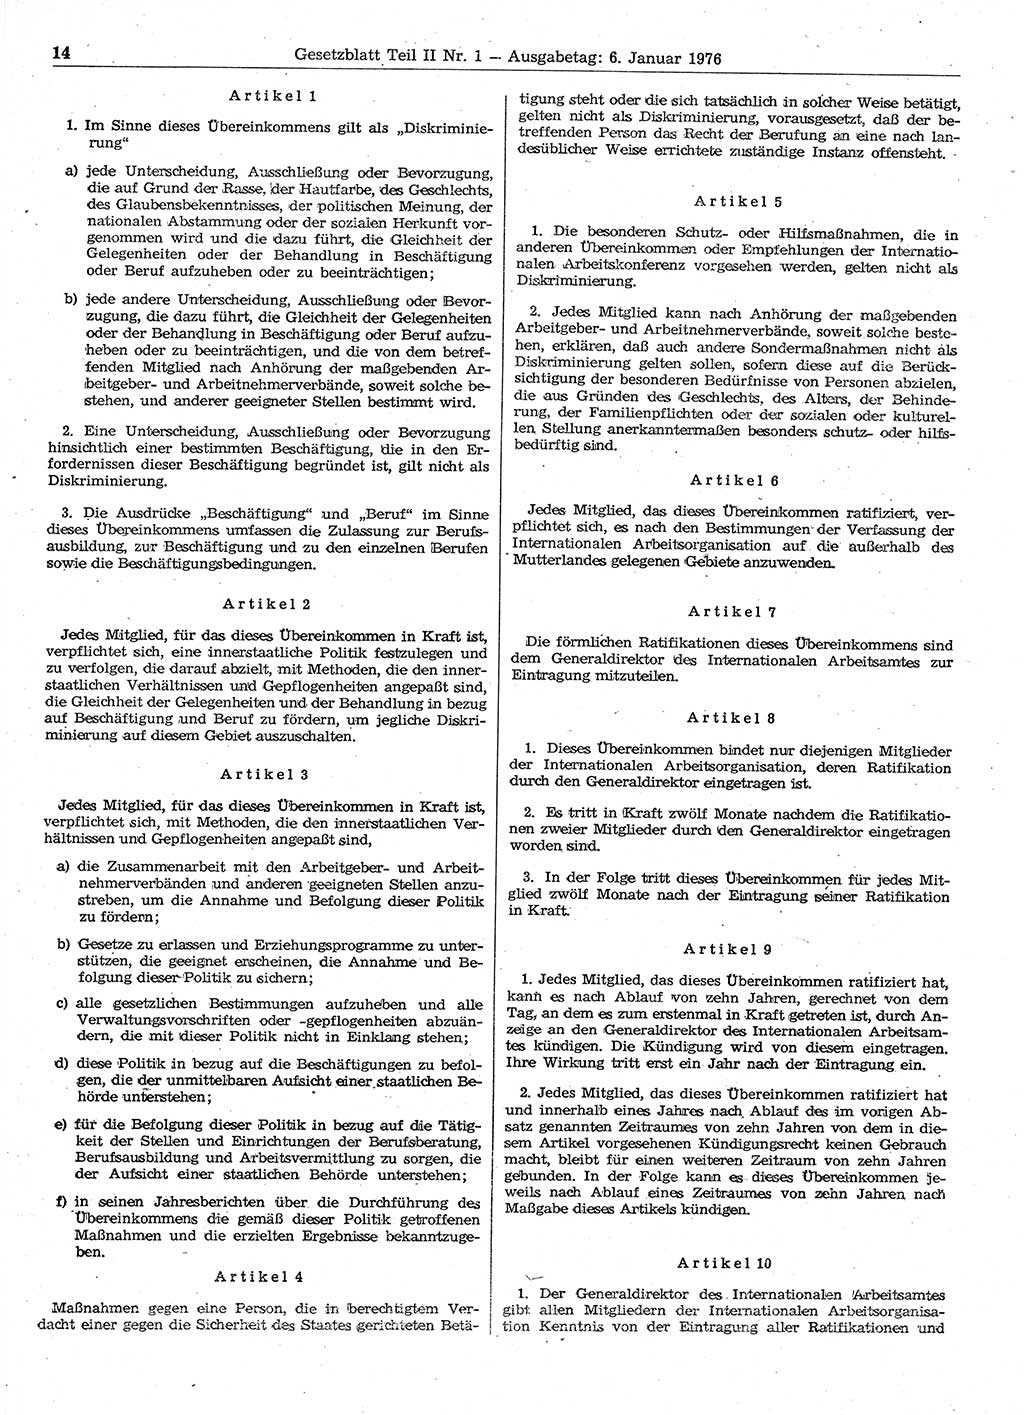 Gesetzblatt (GBl.) der Deutschen Demokratischen Republik (DDR) Teil ⅠⅠ 1976, Seite 14 (GBl. DDR ⅠⅠ 1976, S. 14)